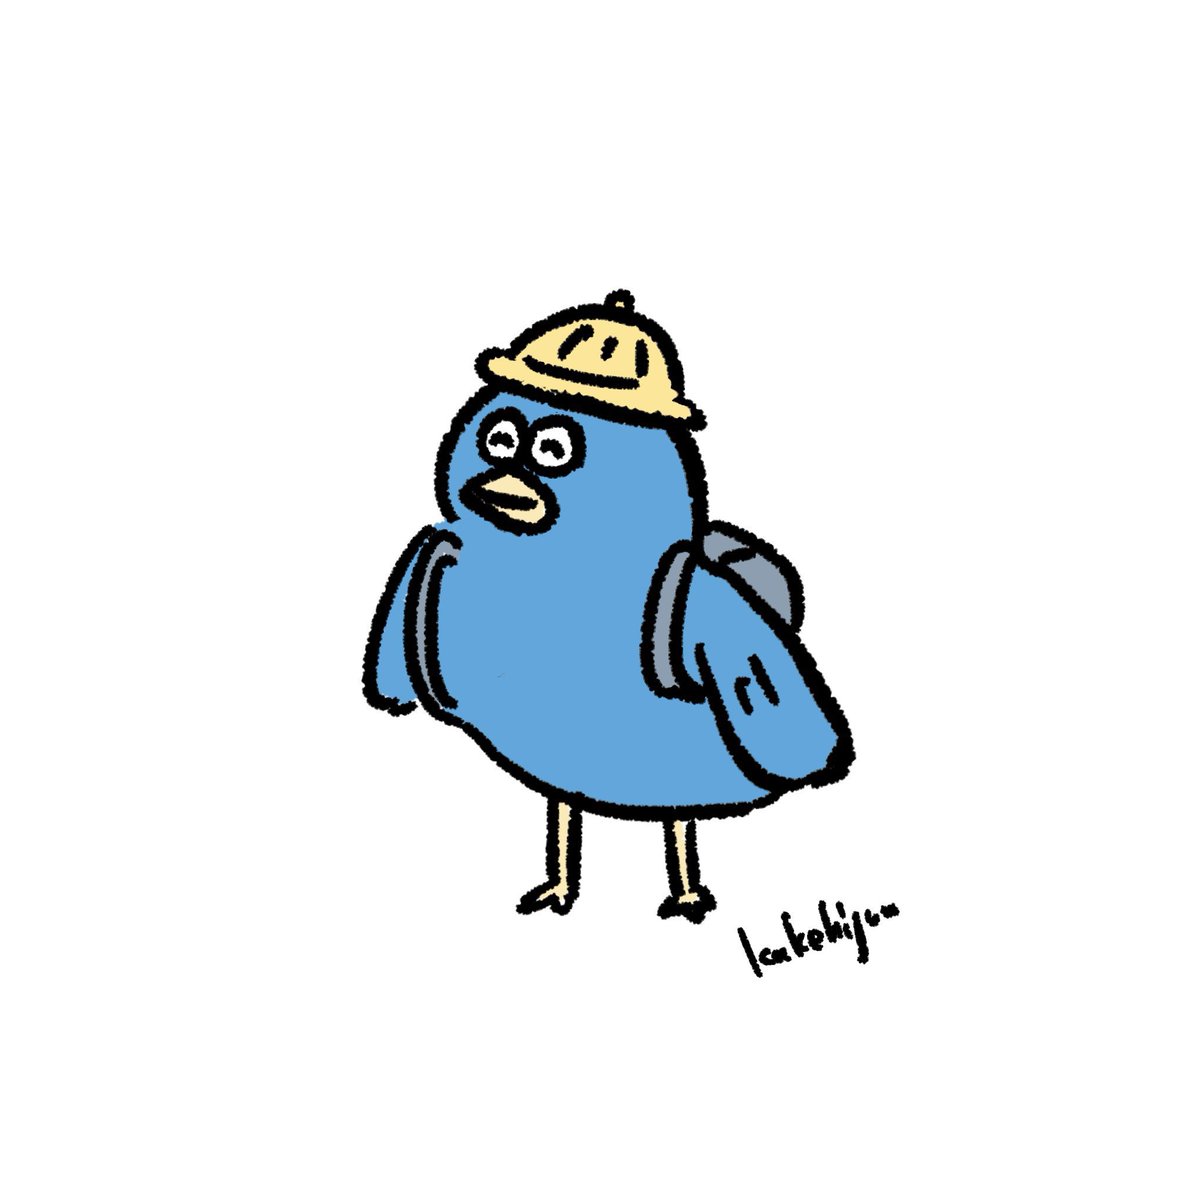 「テーマ【青い鳥】#art_ippi「小学生だった頃の青い鳥」 」|カケヒジュン@イラストレーターのイラスト